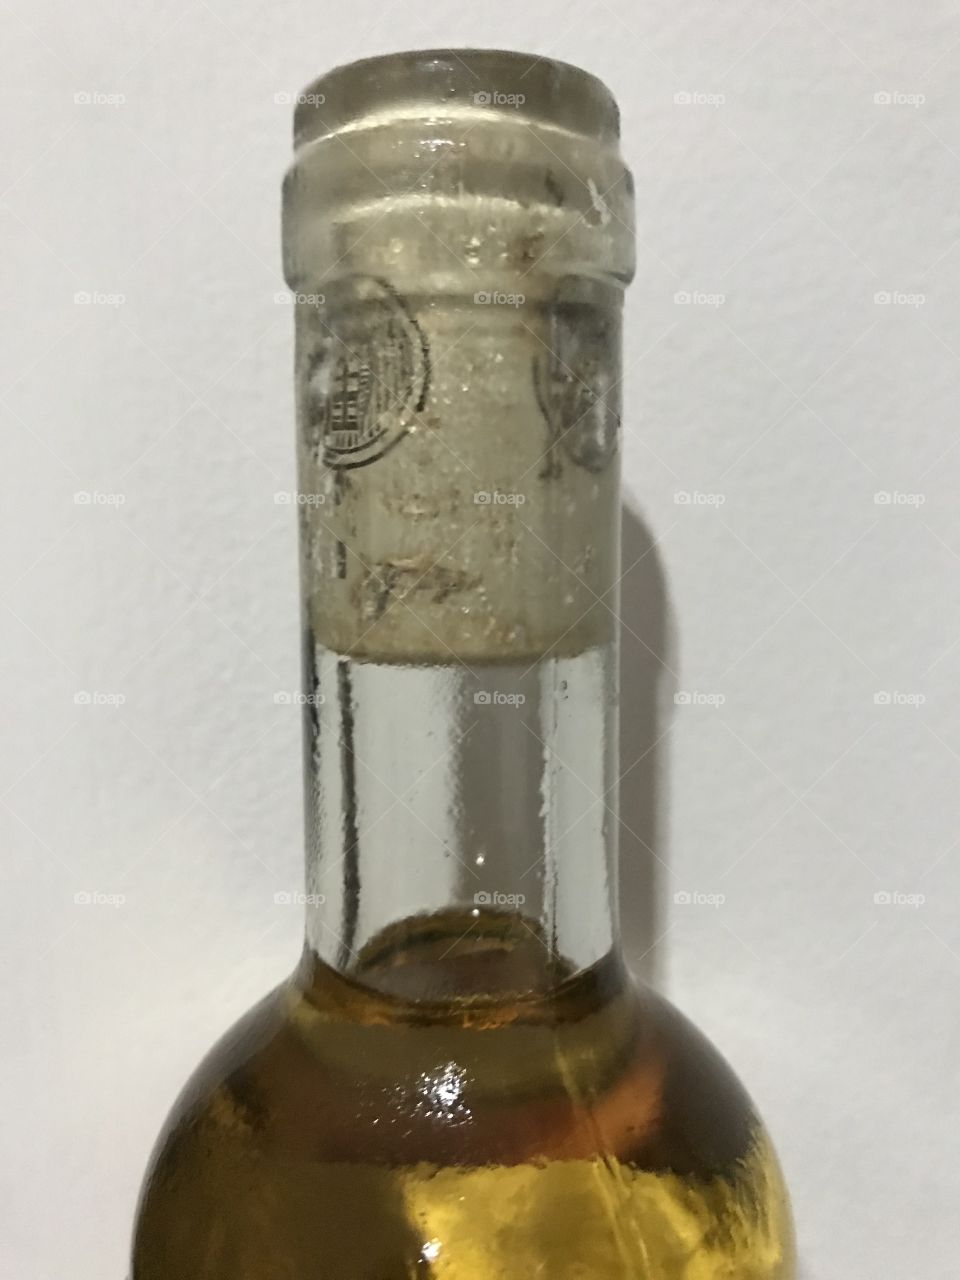 Cork in the bottle 